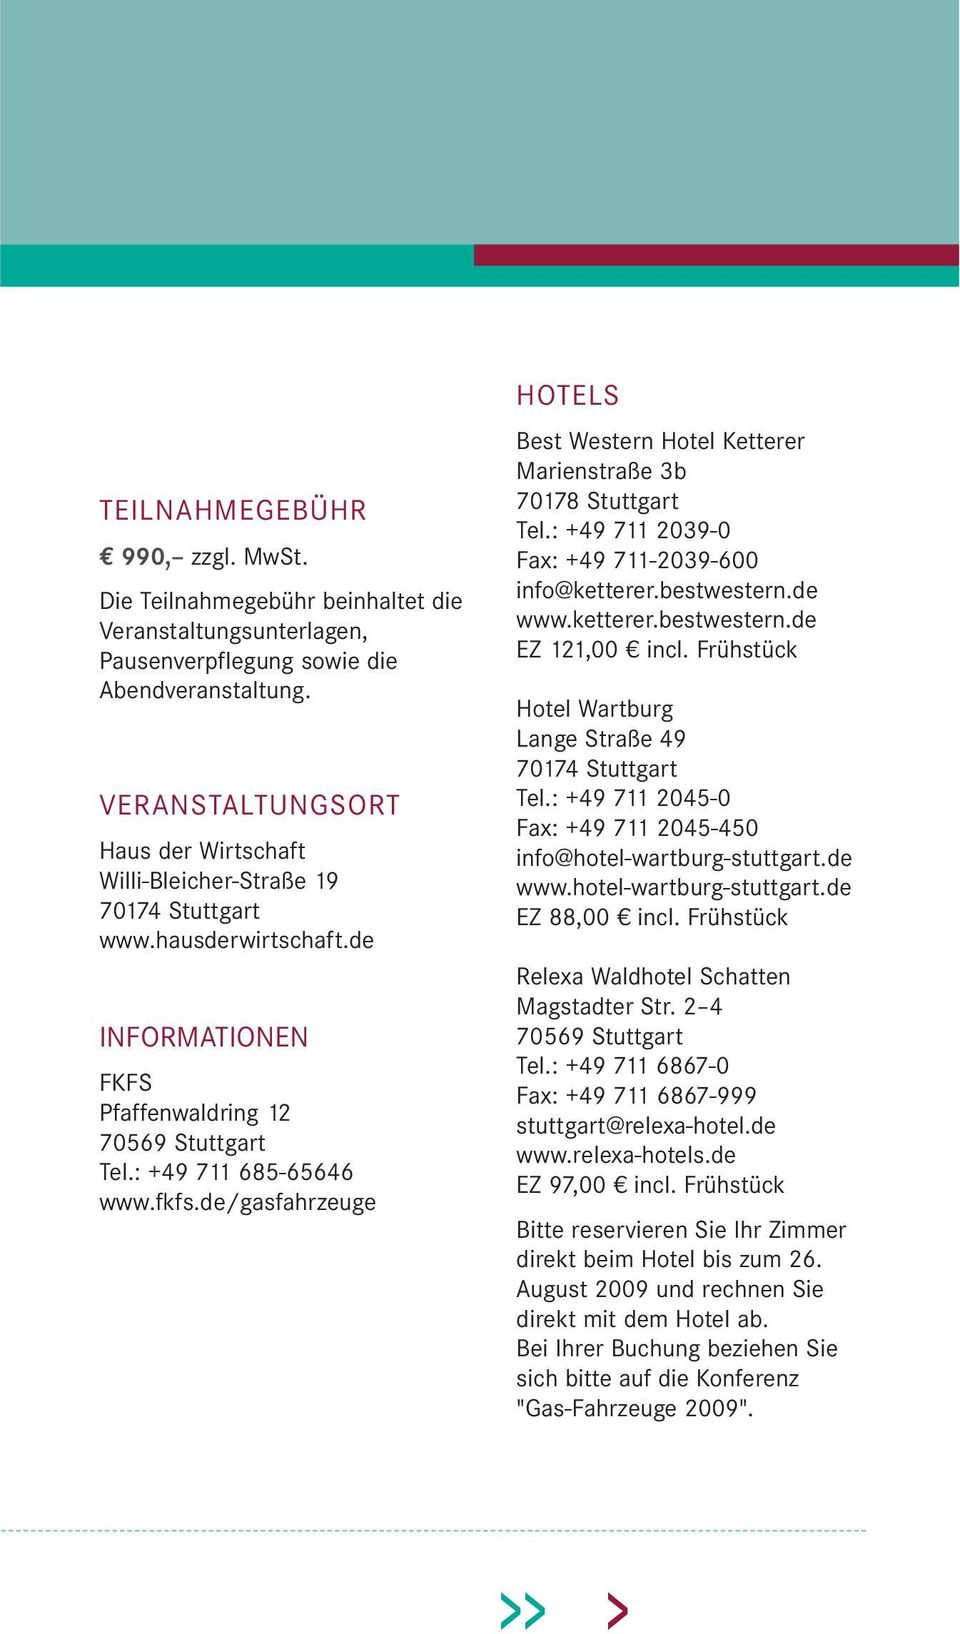 de/gasfahrzeuge HOTELS Best Western Hotel Ketterer Marienstraße 3b 70178 Stuttgart Tel.: +49 711 2039-0 Fax: +49 711-2039-600 info@ketterer.bestwestern.de www.ketterer.bestwestern.de EZ 121,00 incl.